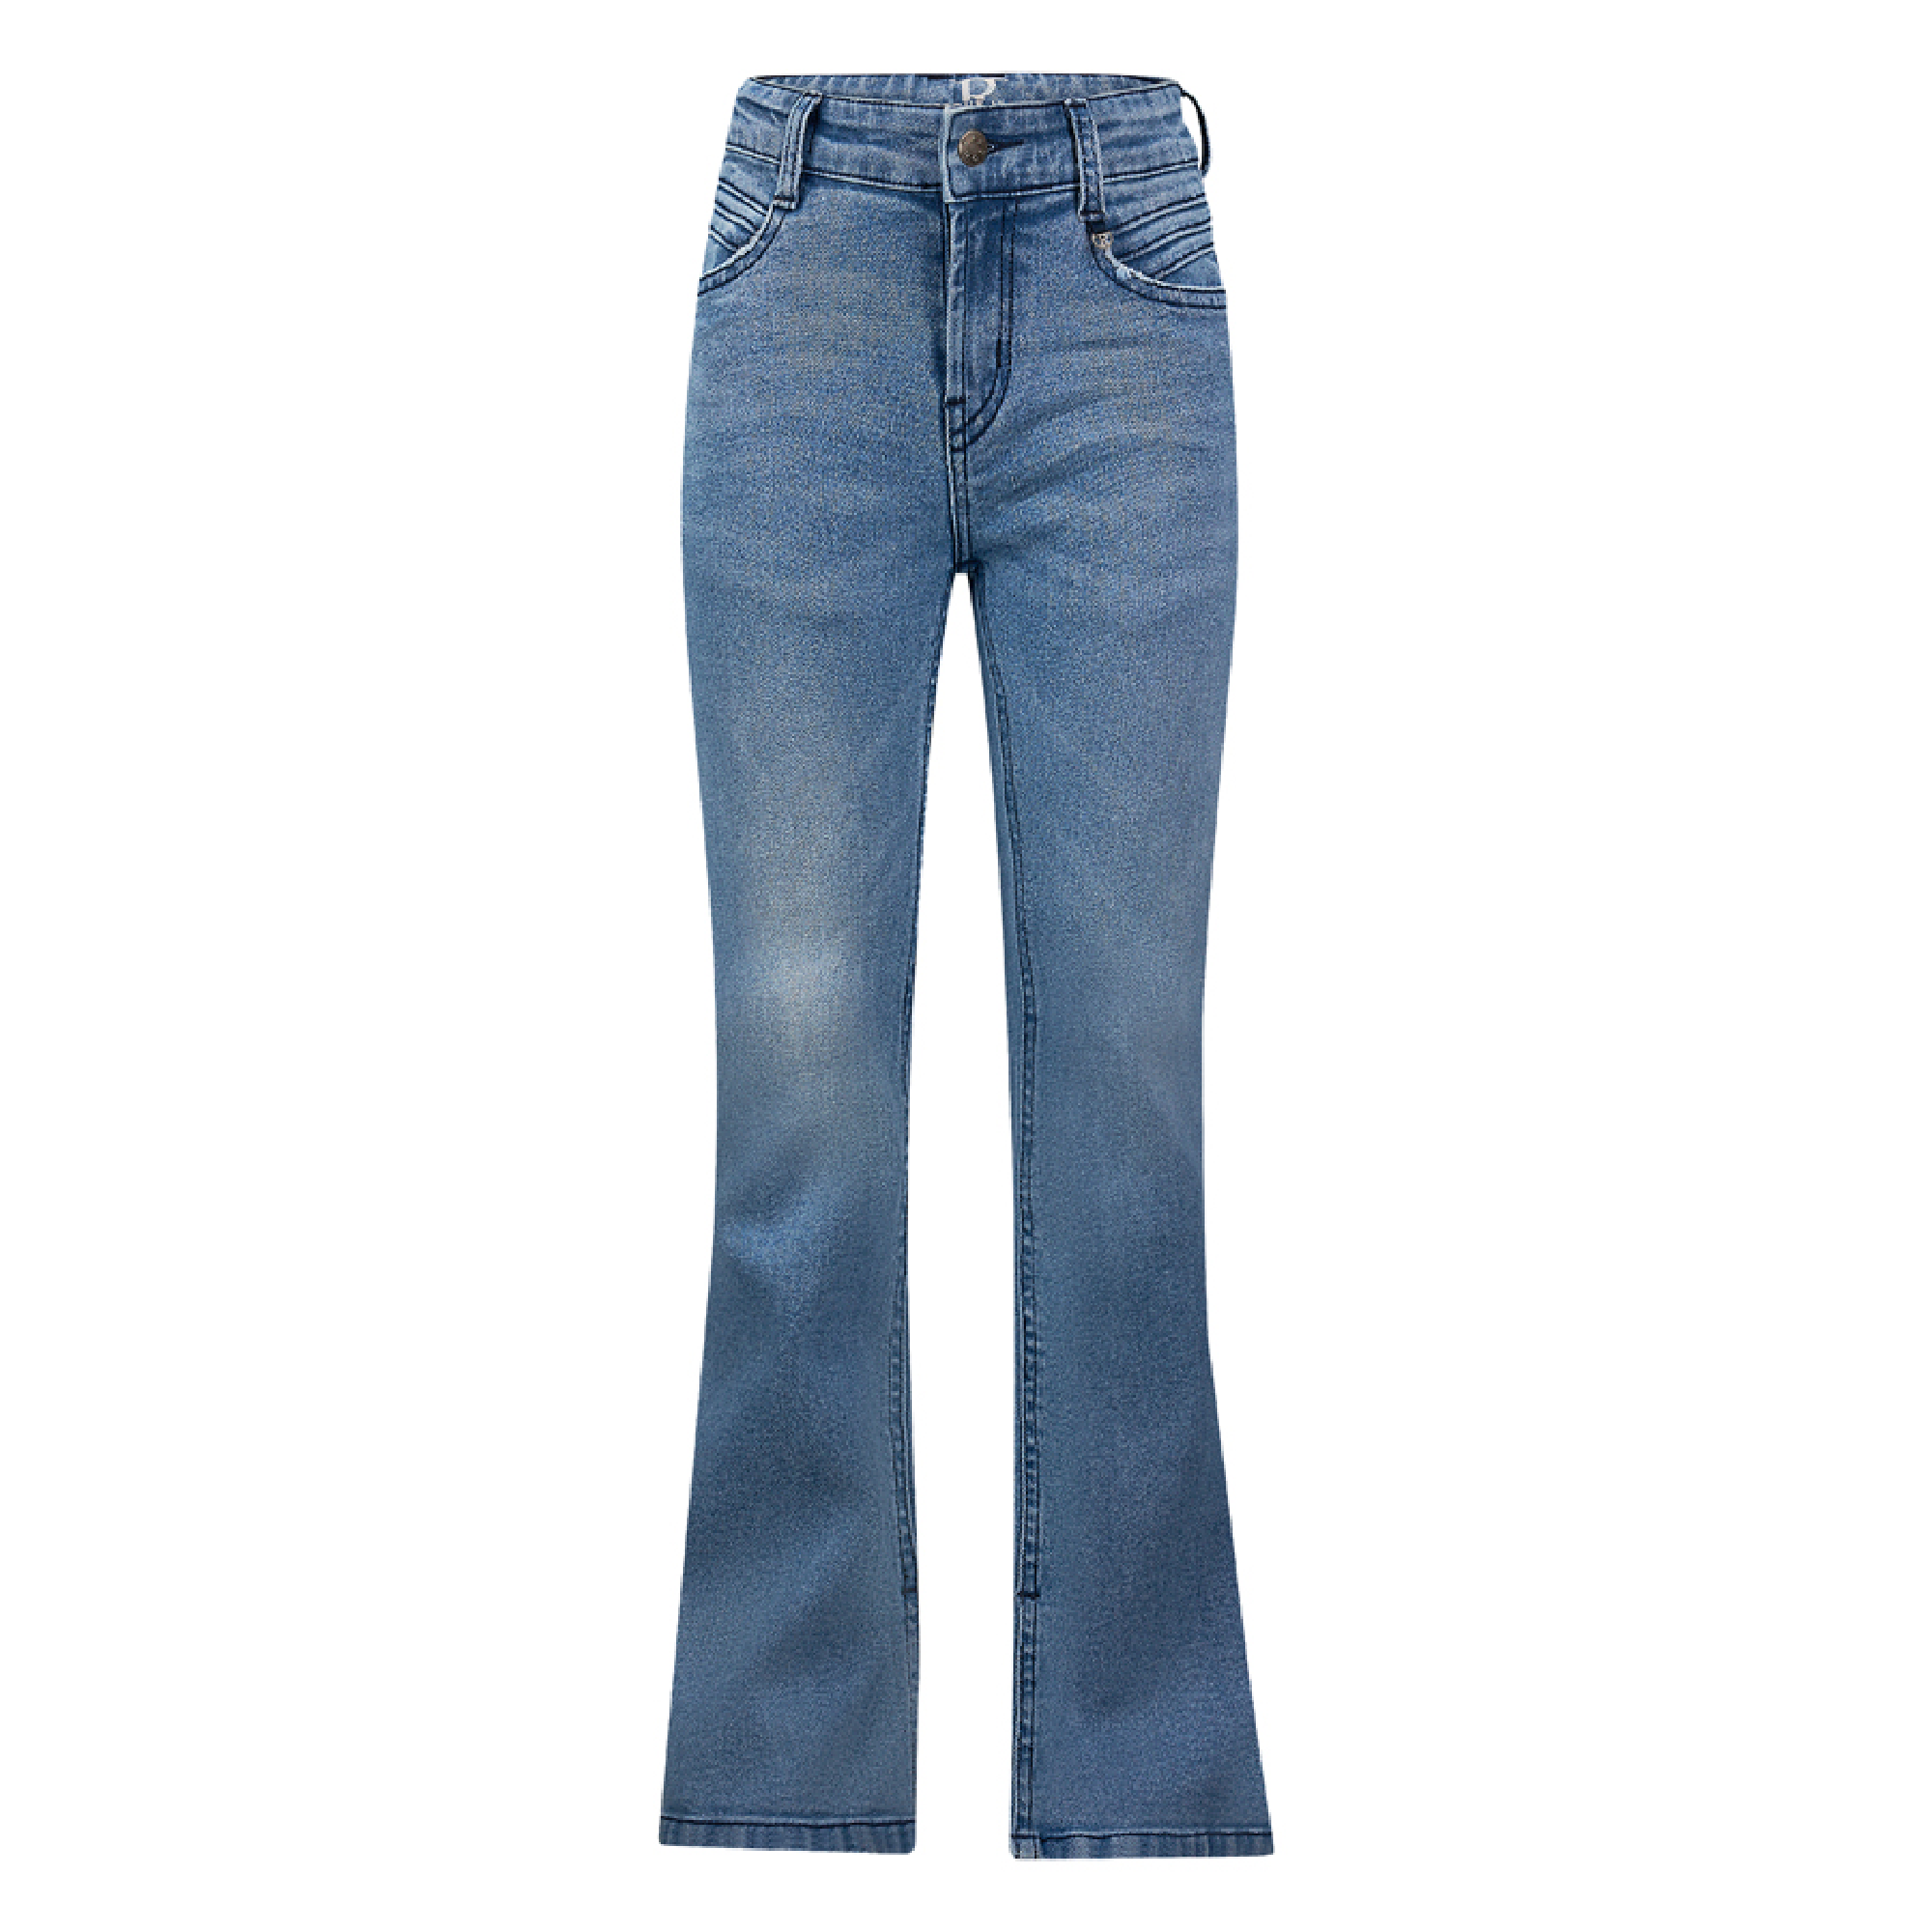 Retour Jeans flared Anouk antique blue